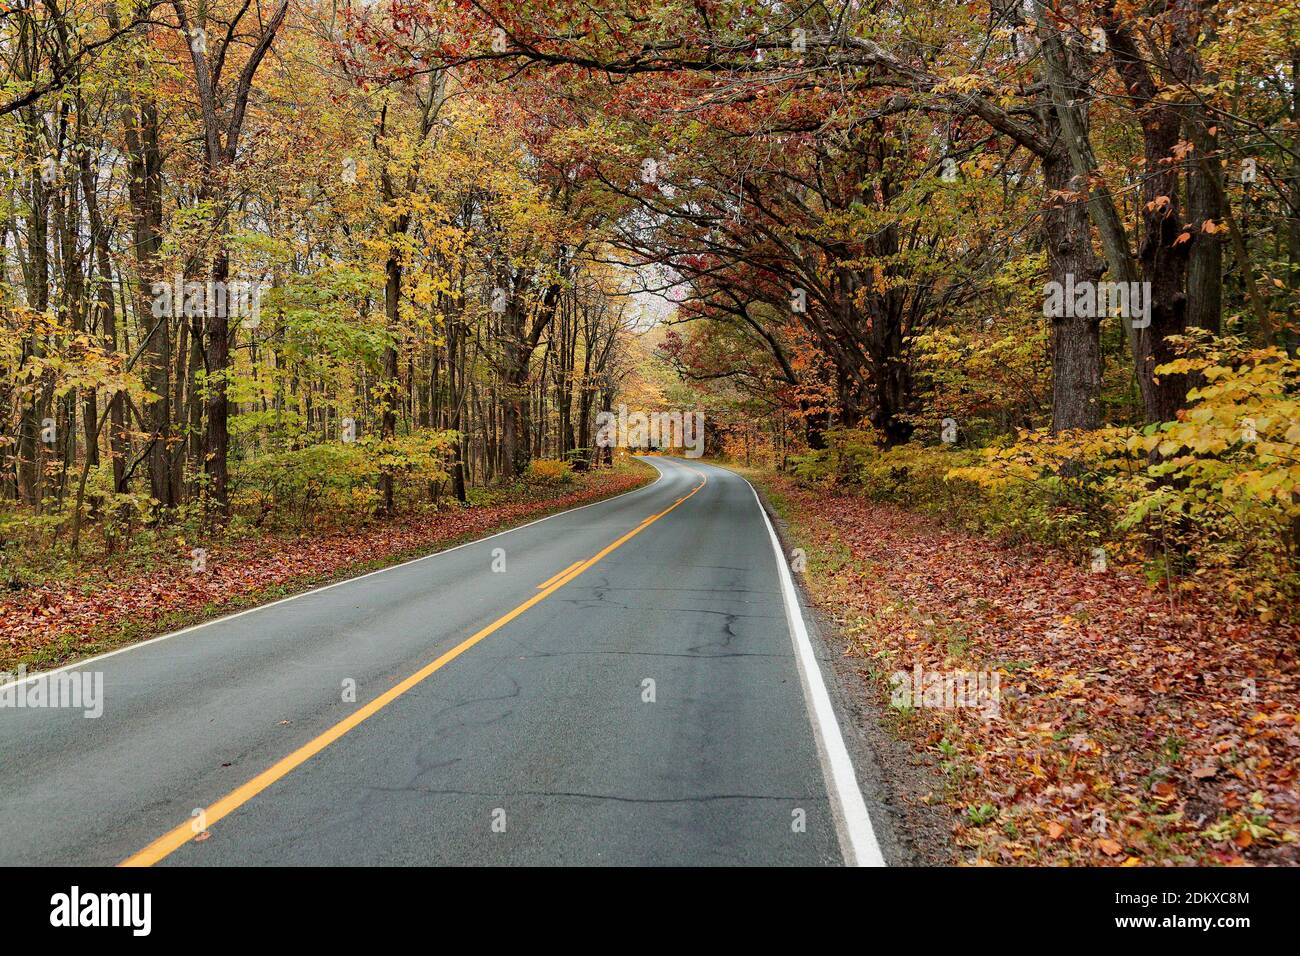 Camino bordeado de árboles con follaje otoñal en el oeste de Michigan Foto de stock